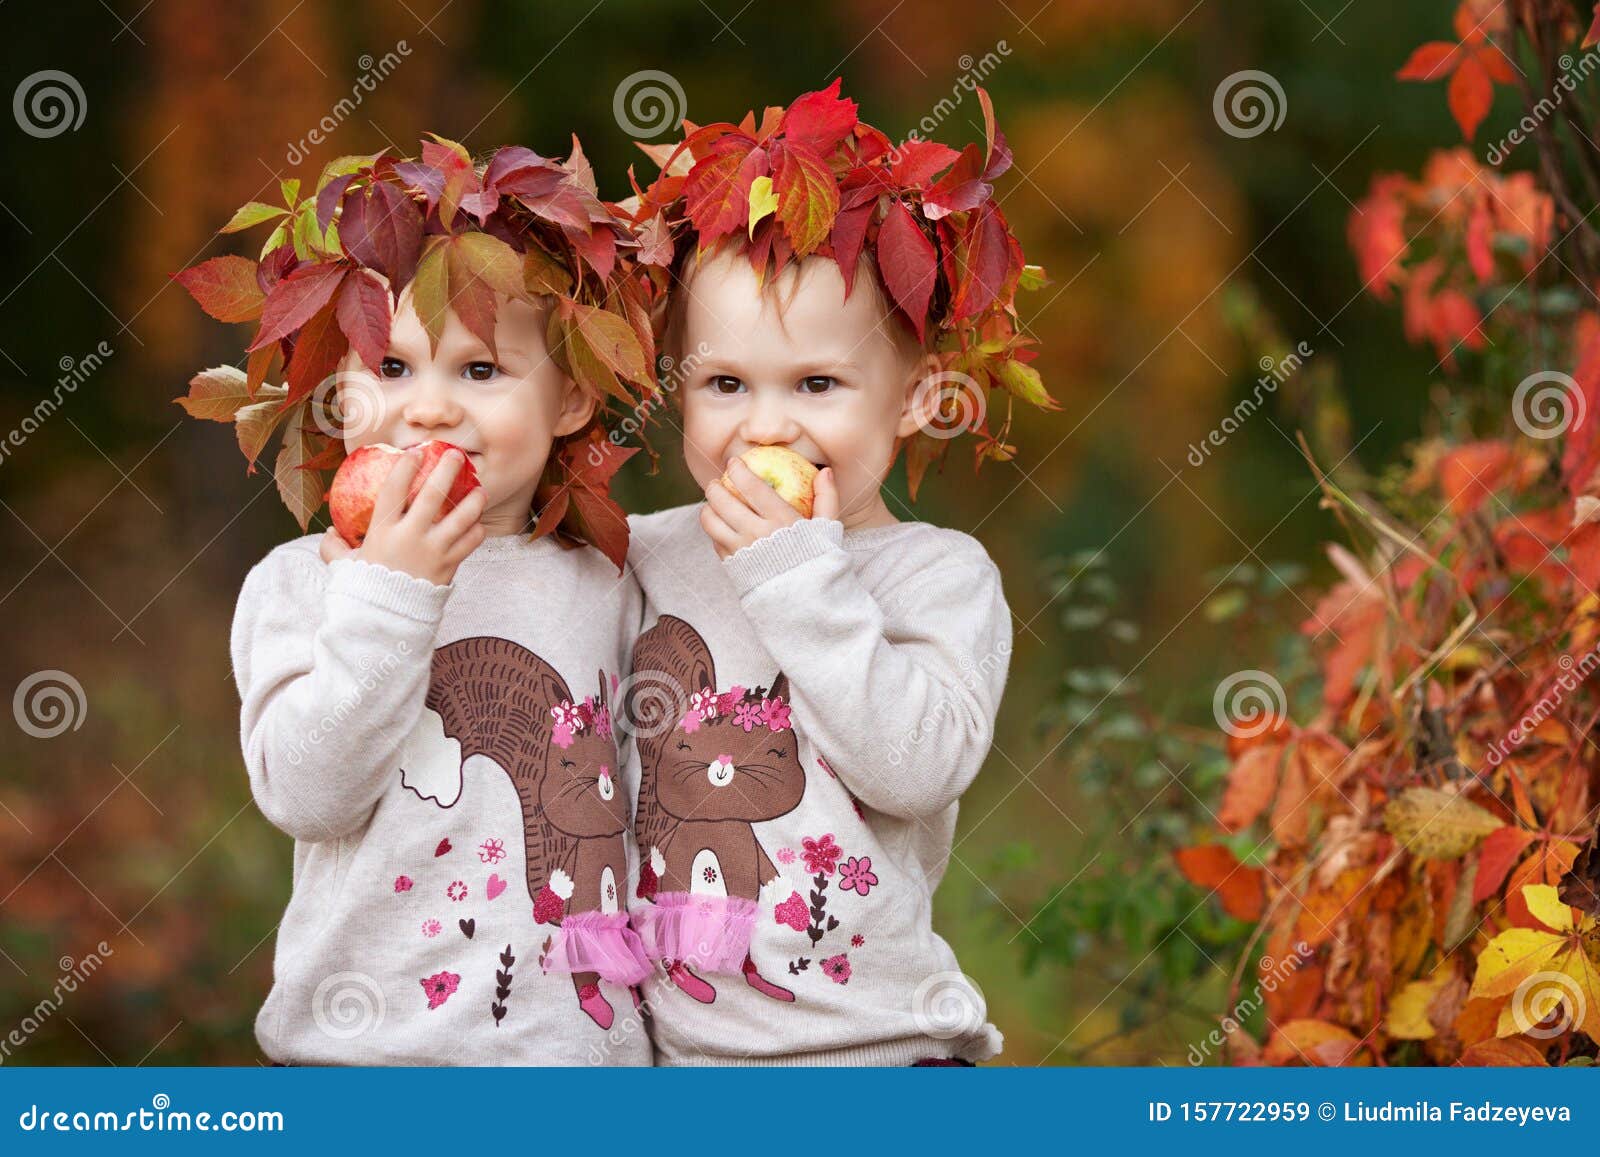 Фото Детей С Яблоками Осень